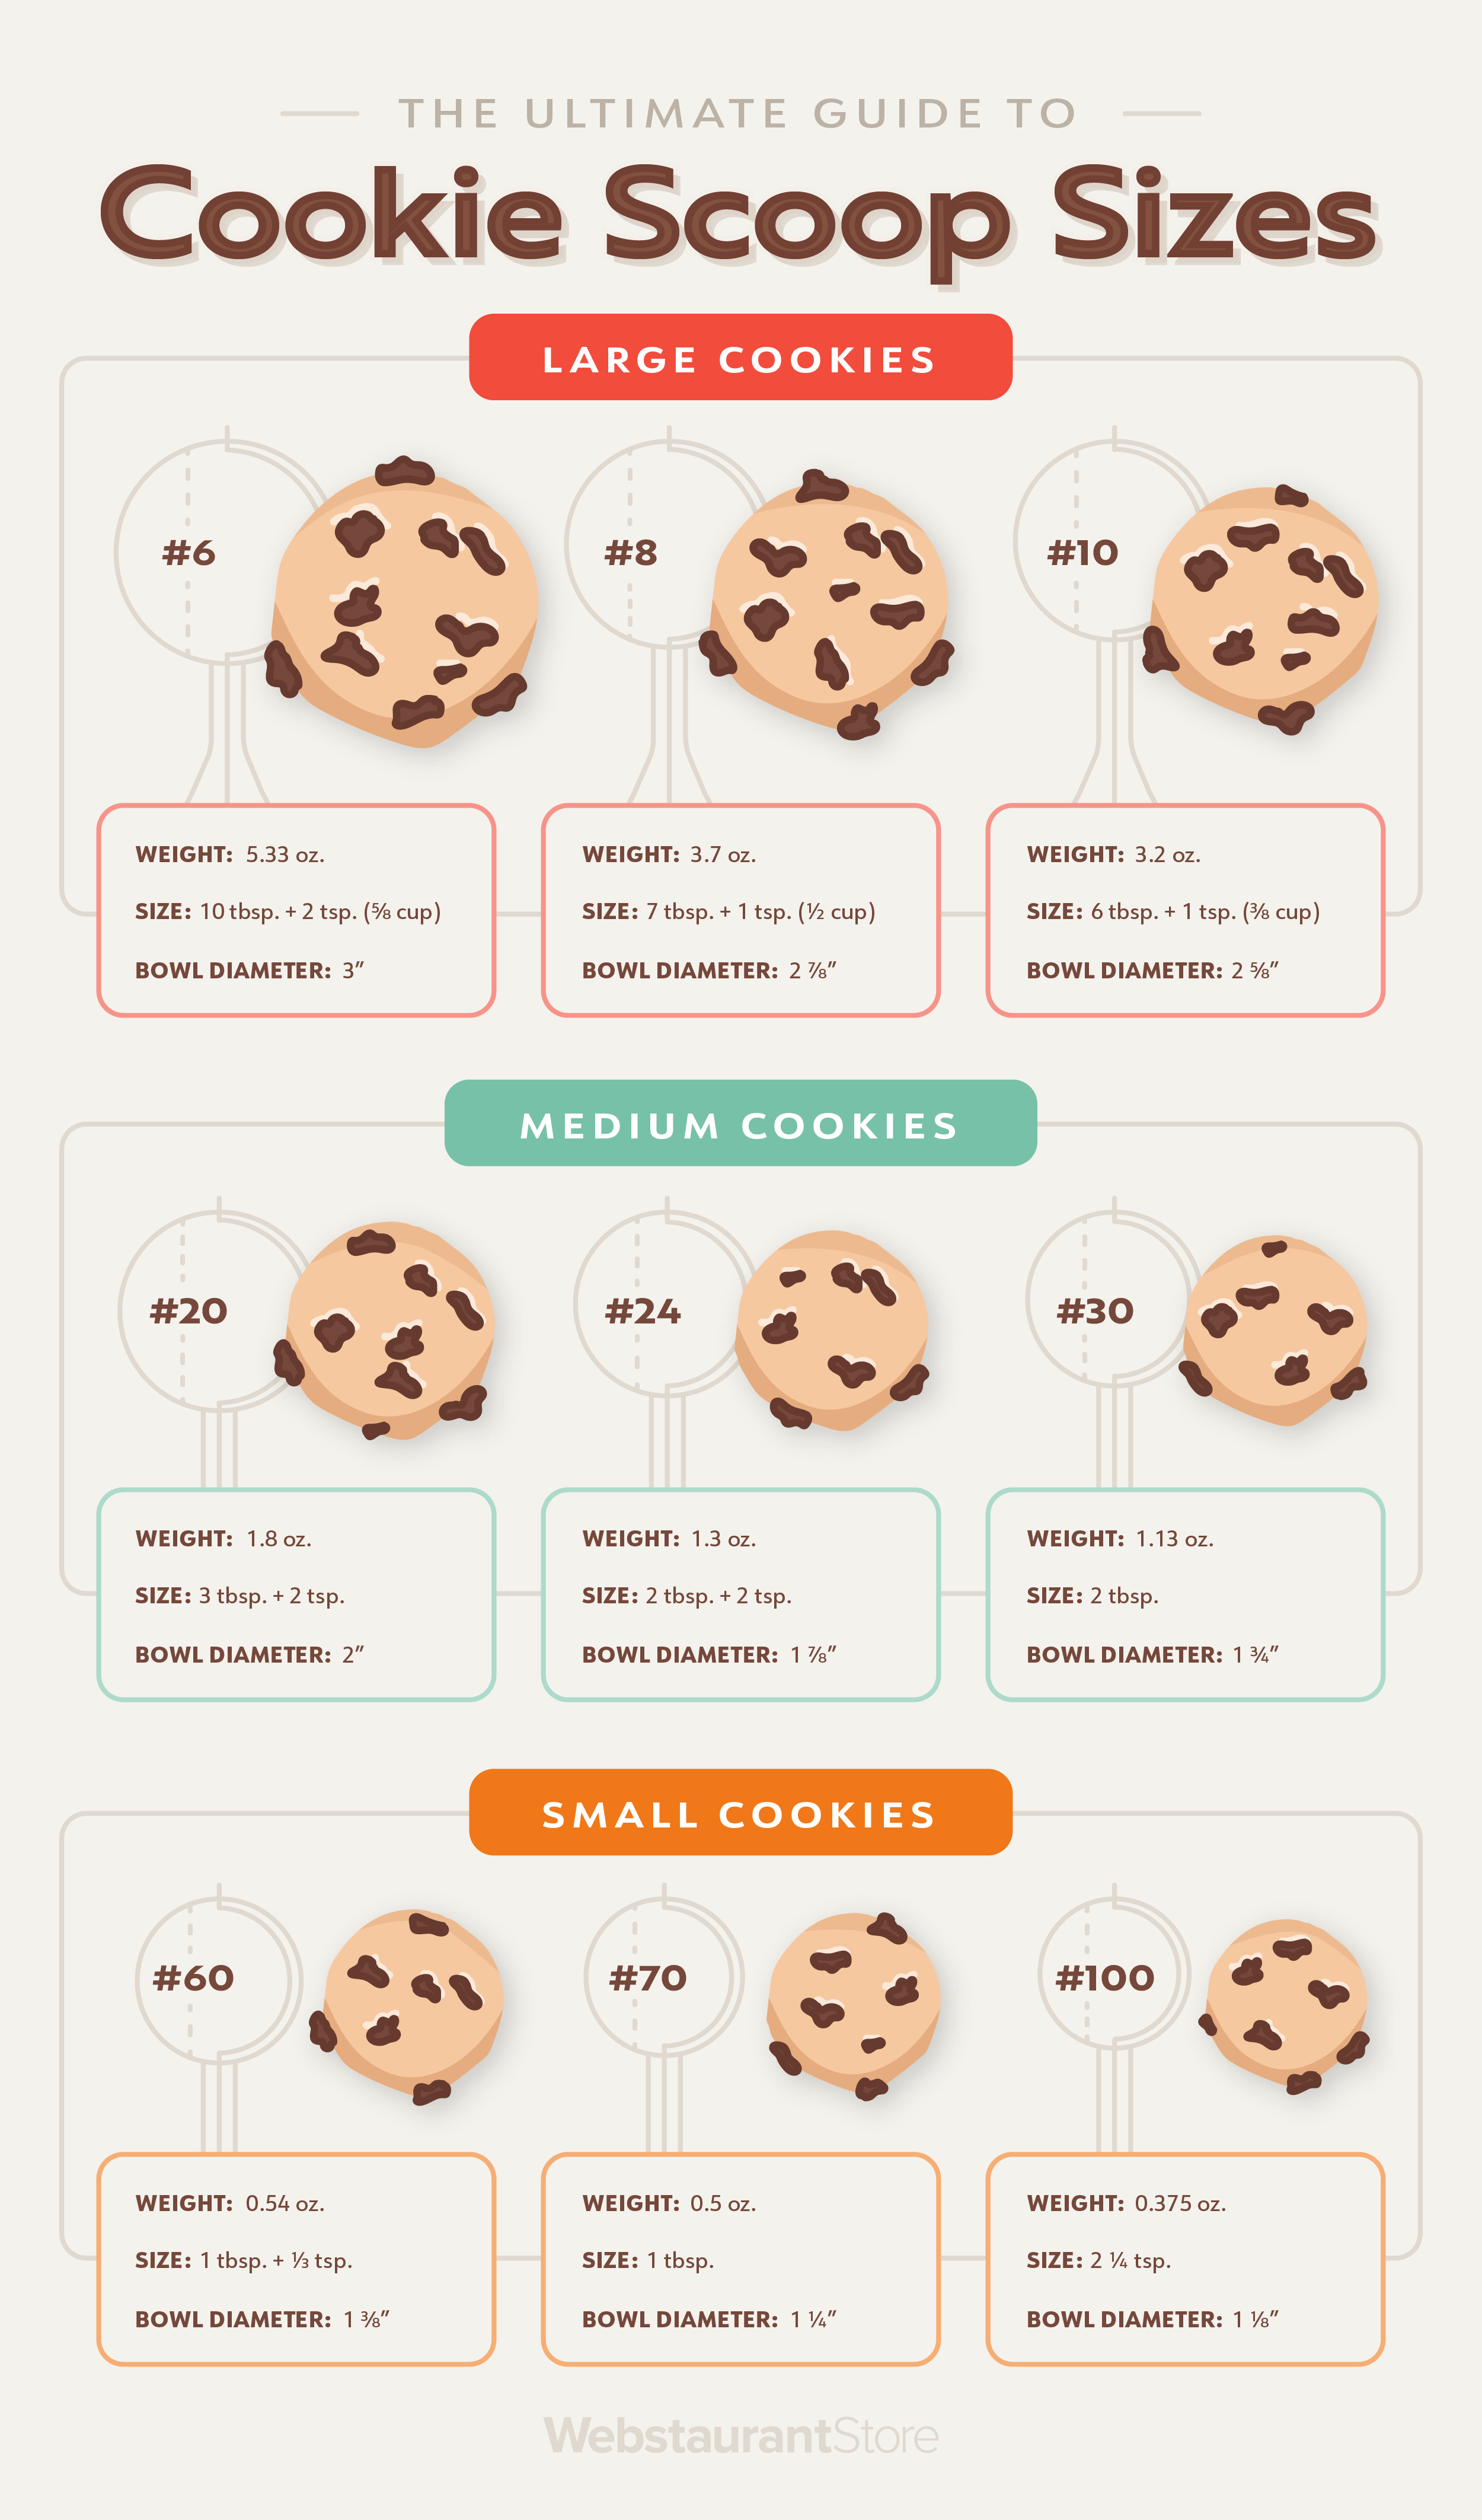 https://cdnimg.webstaurantstore.com/uploads/blog/2021/3/cookie-scoop-sizes_infographic.png